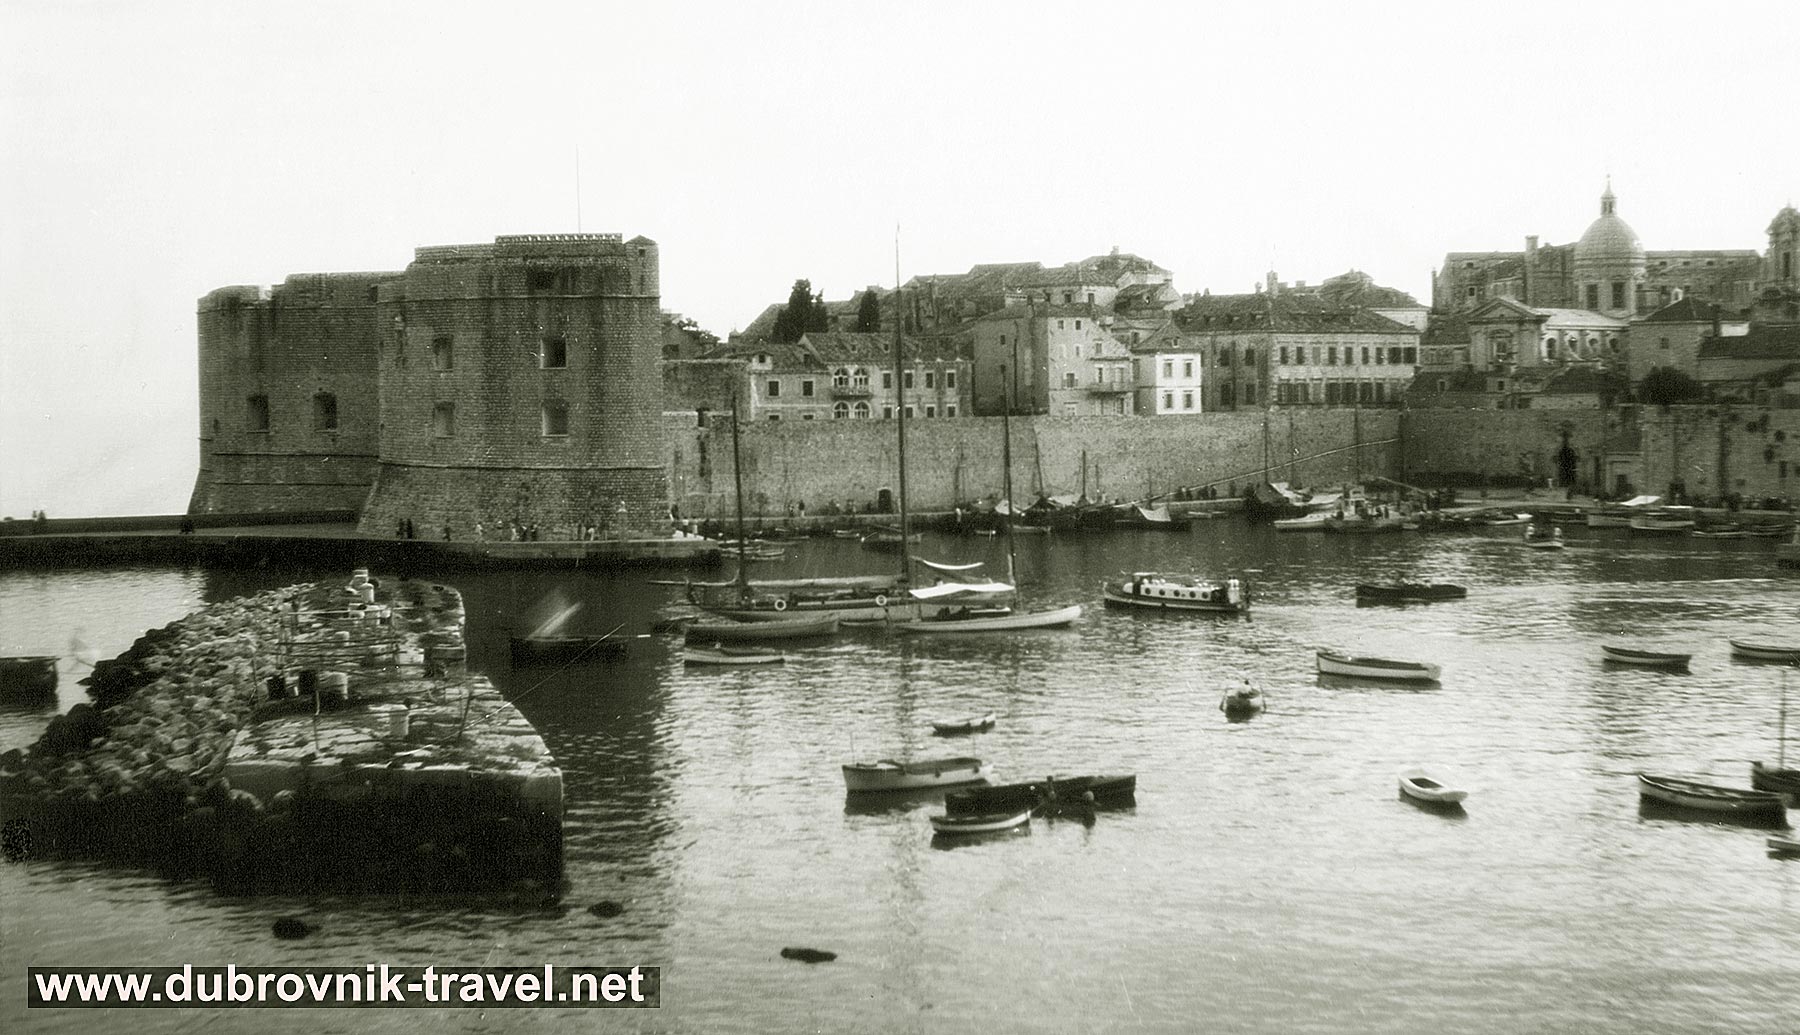 Porat - Dubrovnik Old Port - views from the eastern side